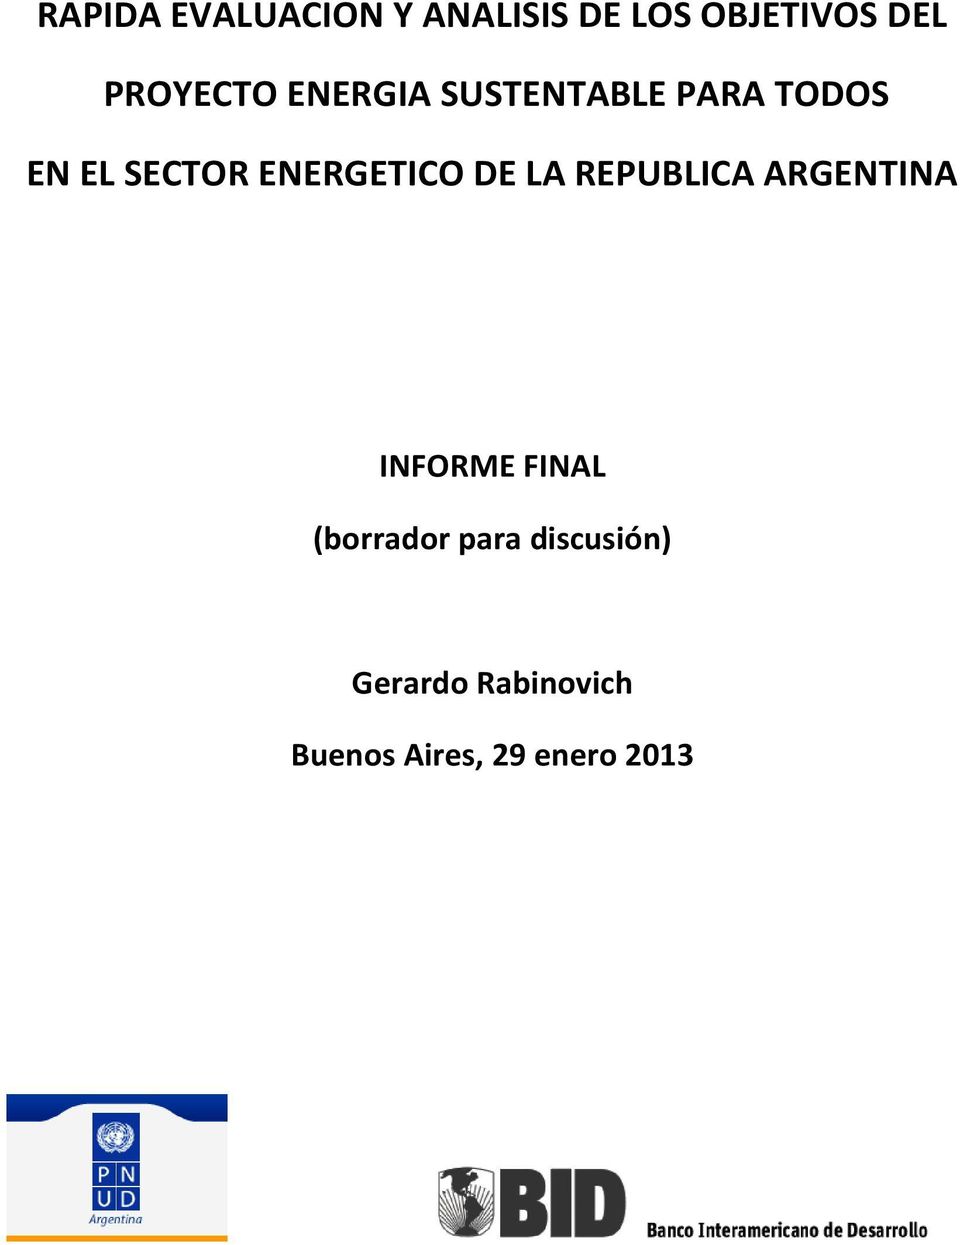 ENERGETICO DE LA REPUBLICA ARGENTINA INFORME FINAL